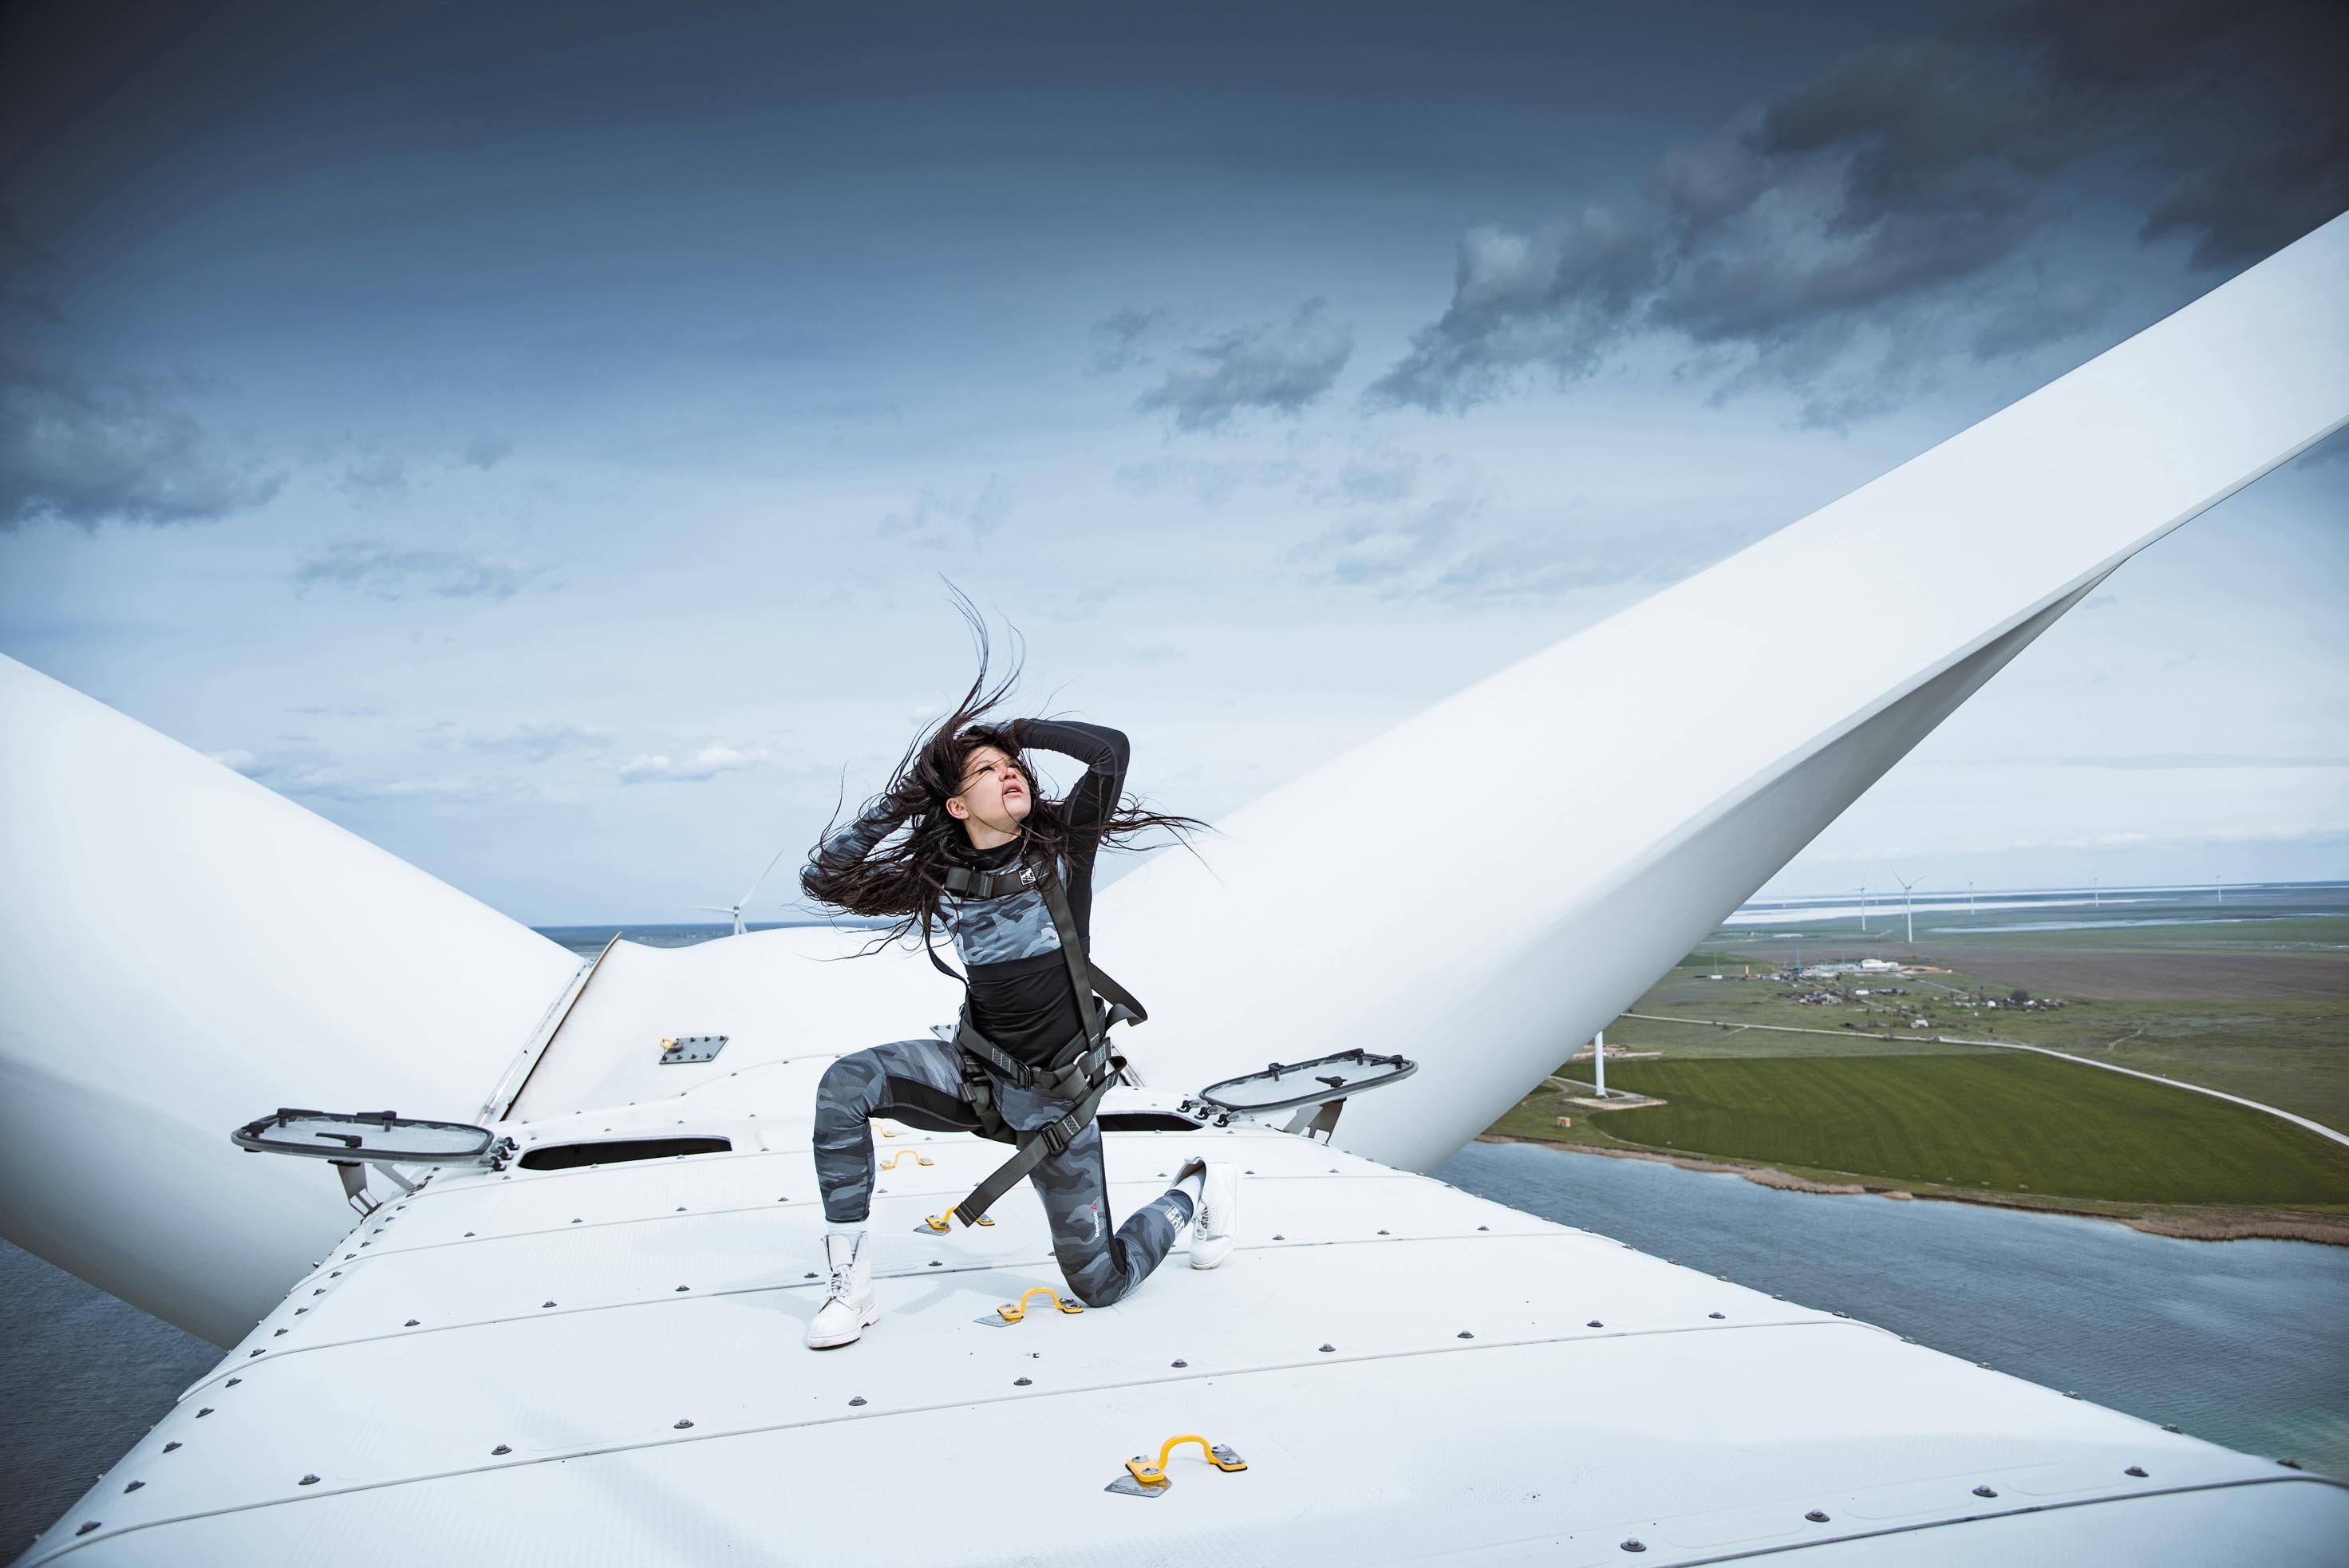 Руслана потанцевала на высоте 120 метров в клипе «Ми вітер» (видео) - фото 471251